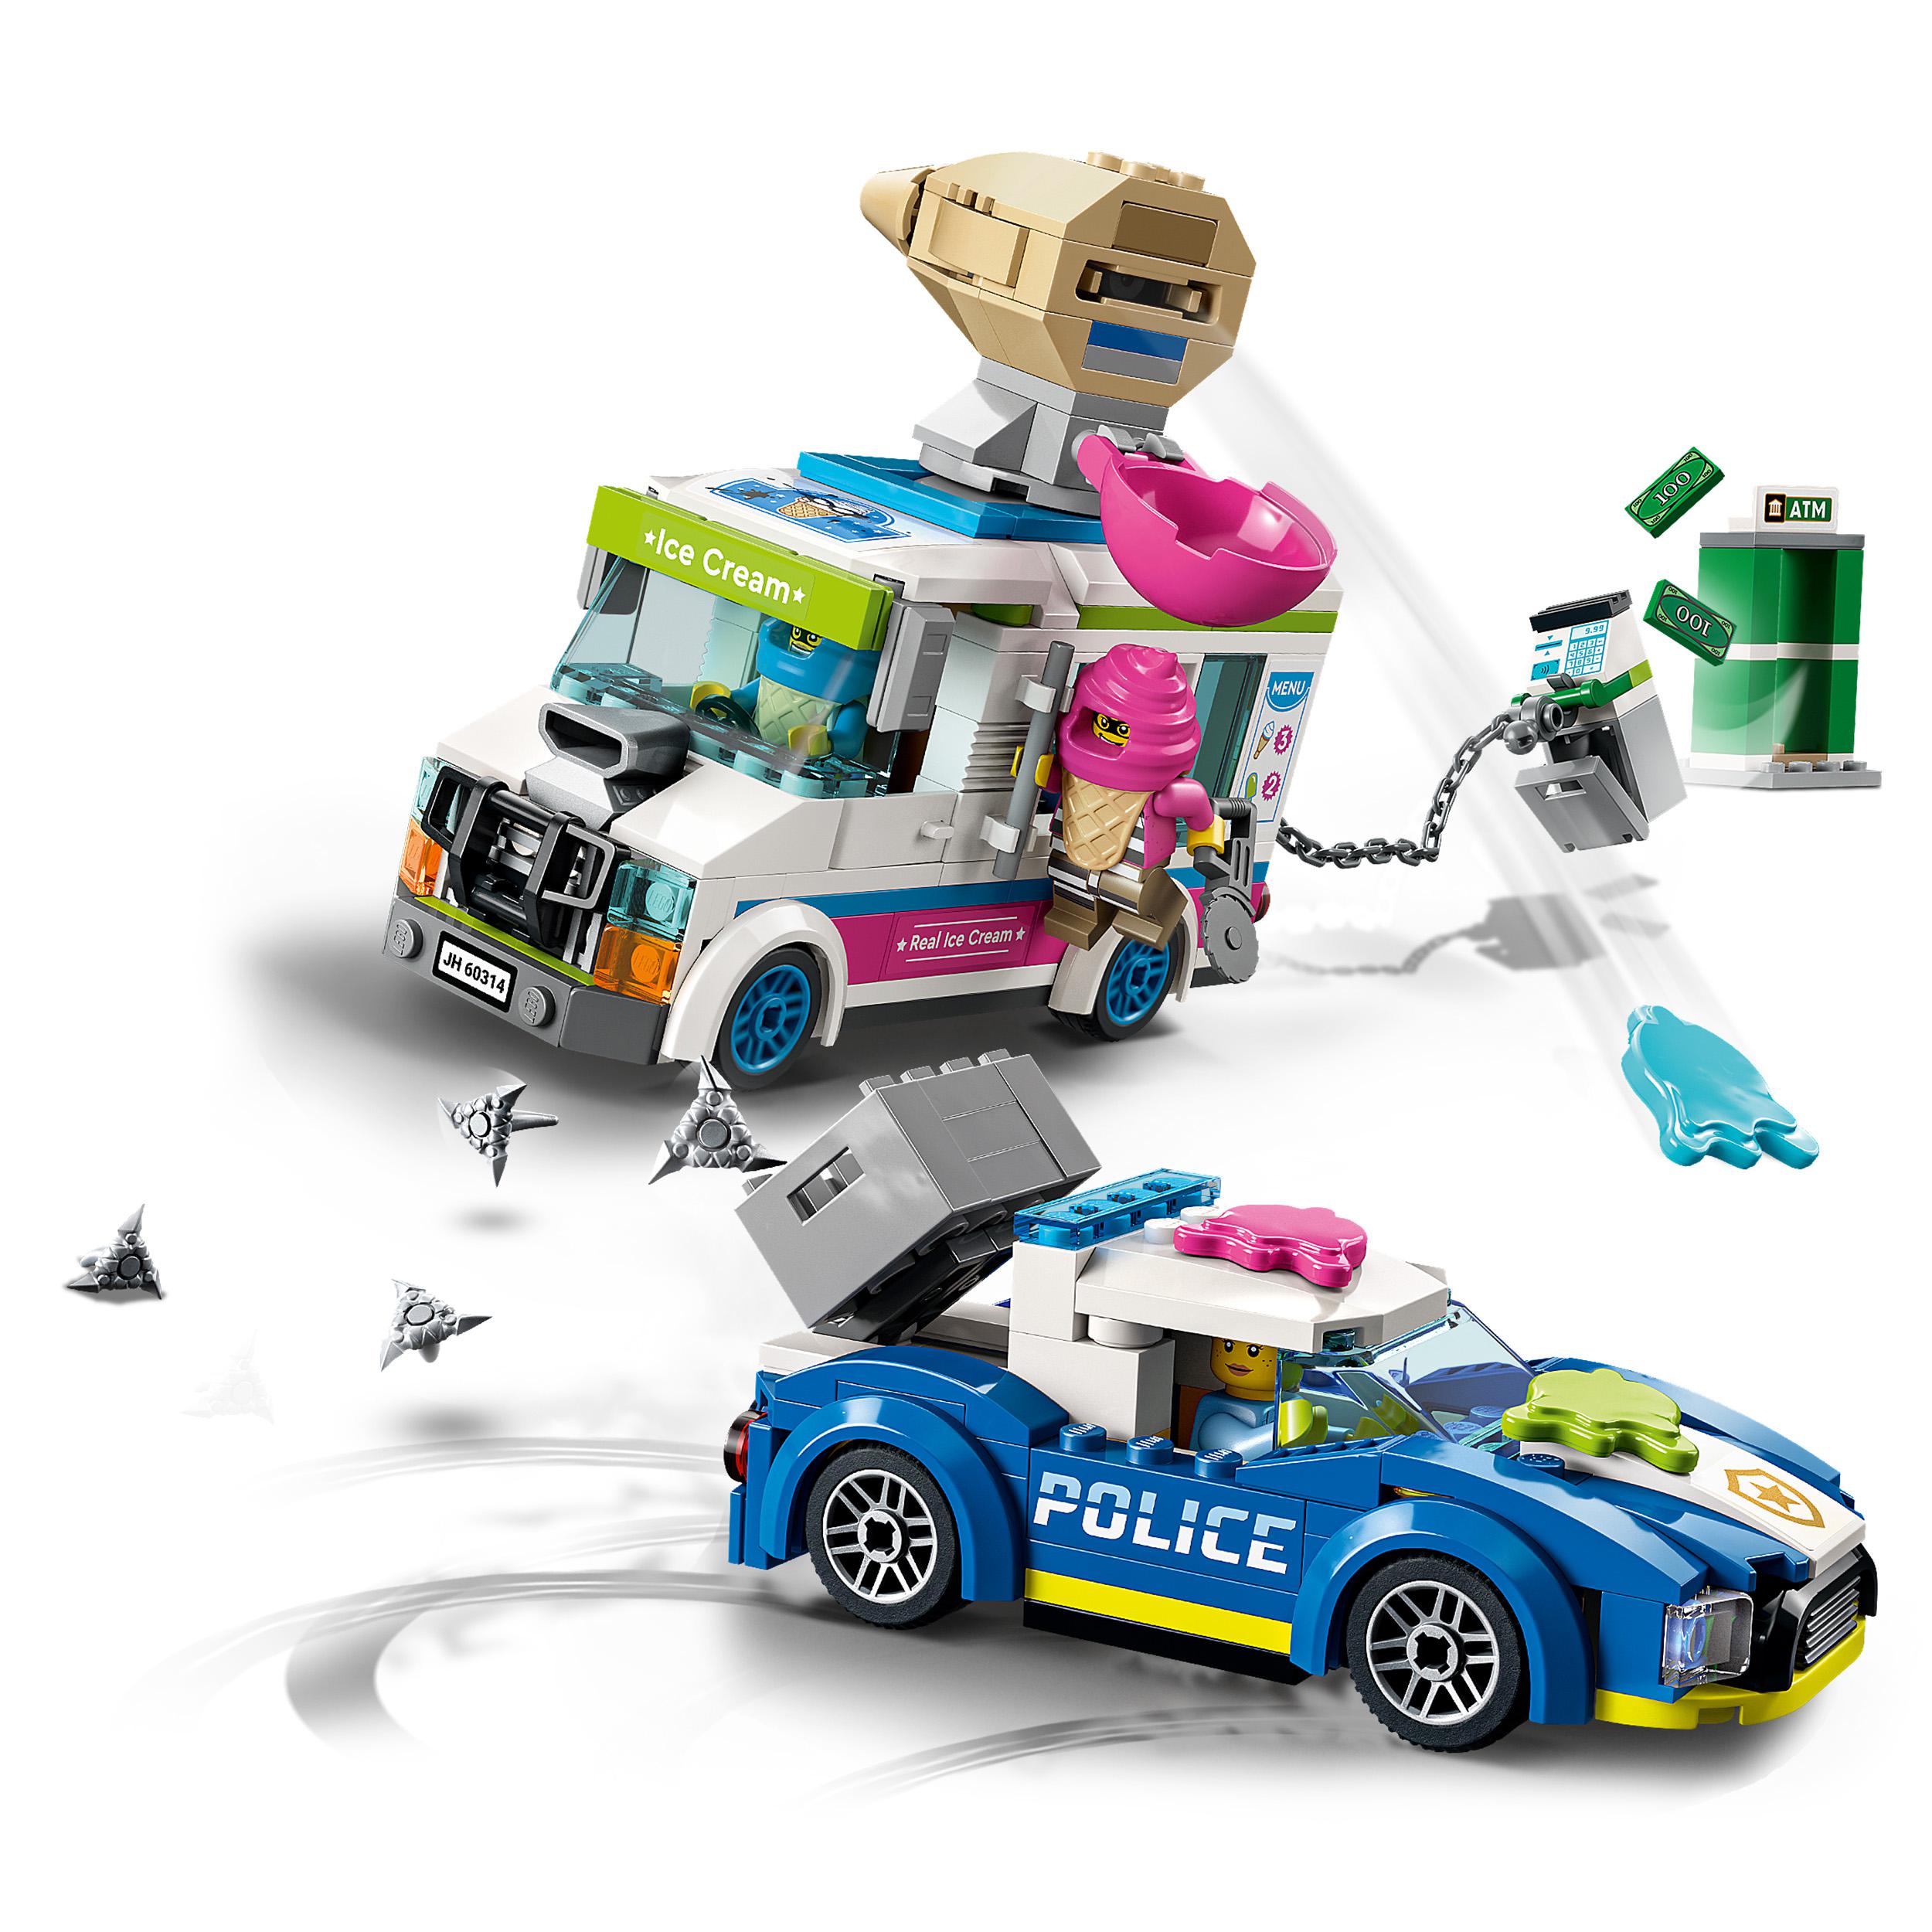 LEGO City Police Il Furgone dei Gelati e l'Inseguimento della Polizia, Set per 60314, , large